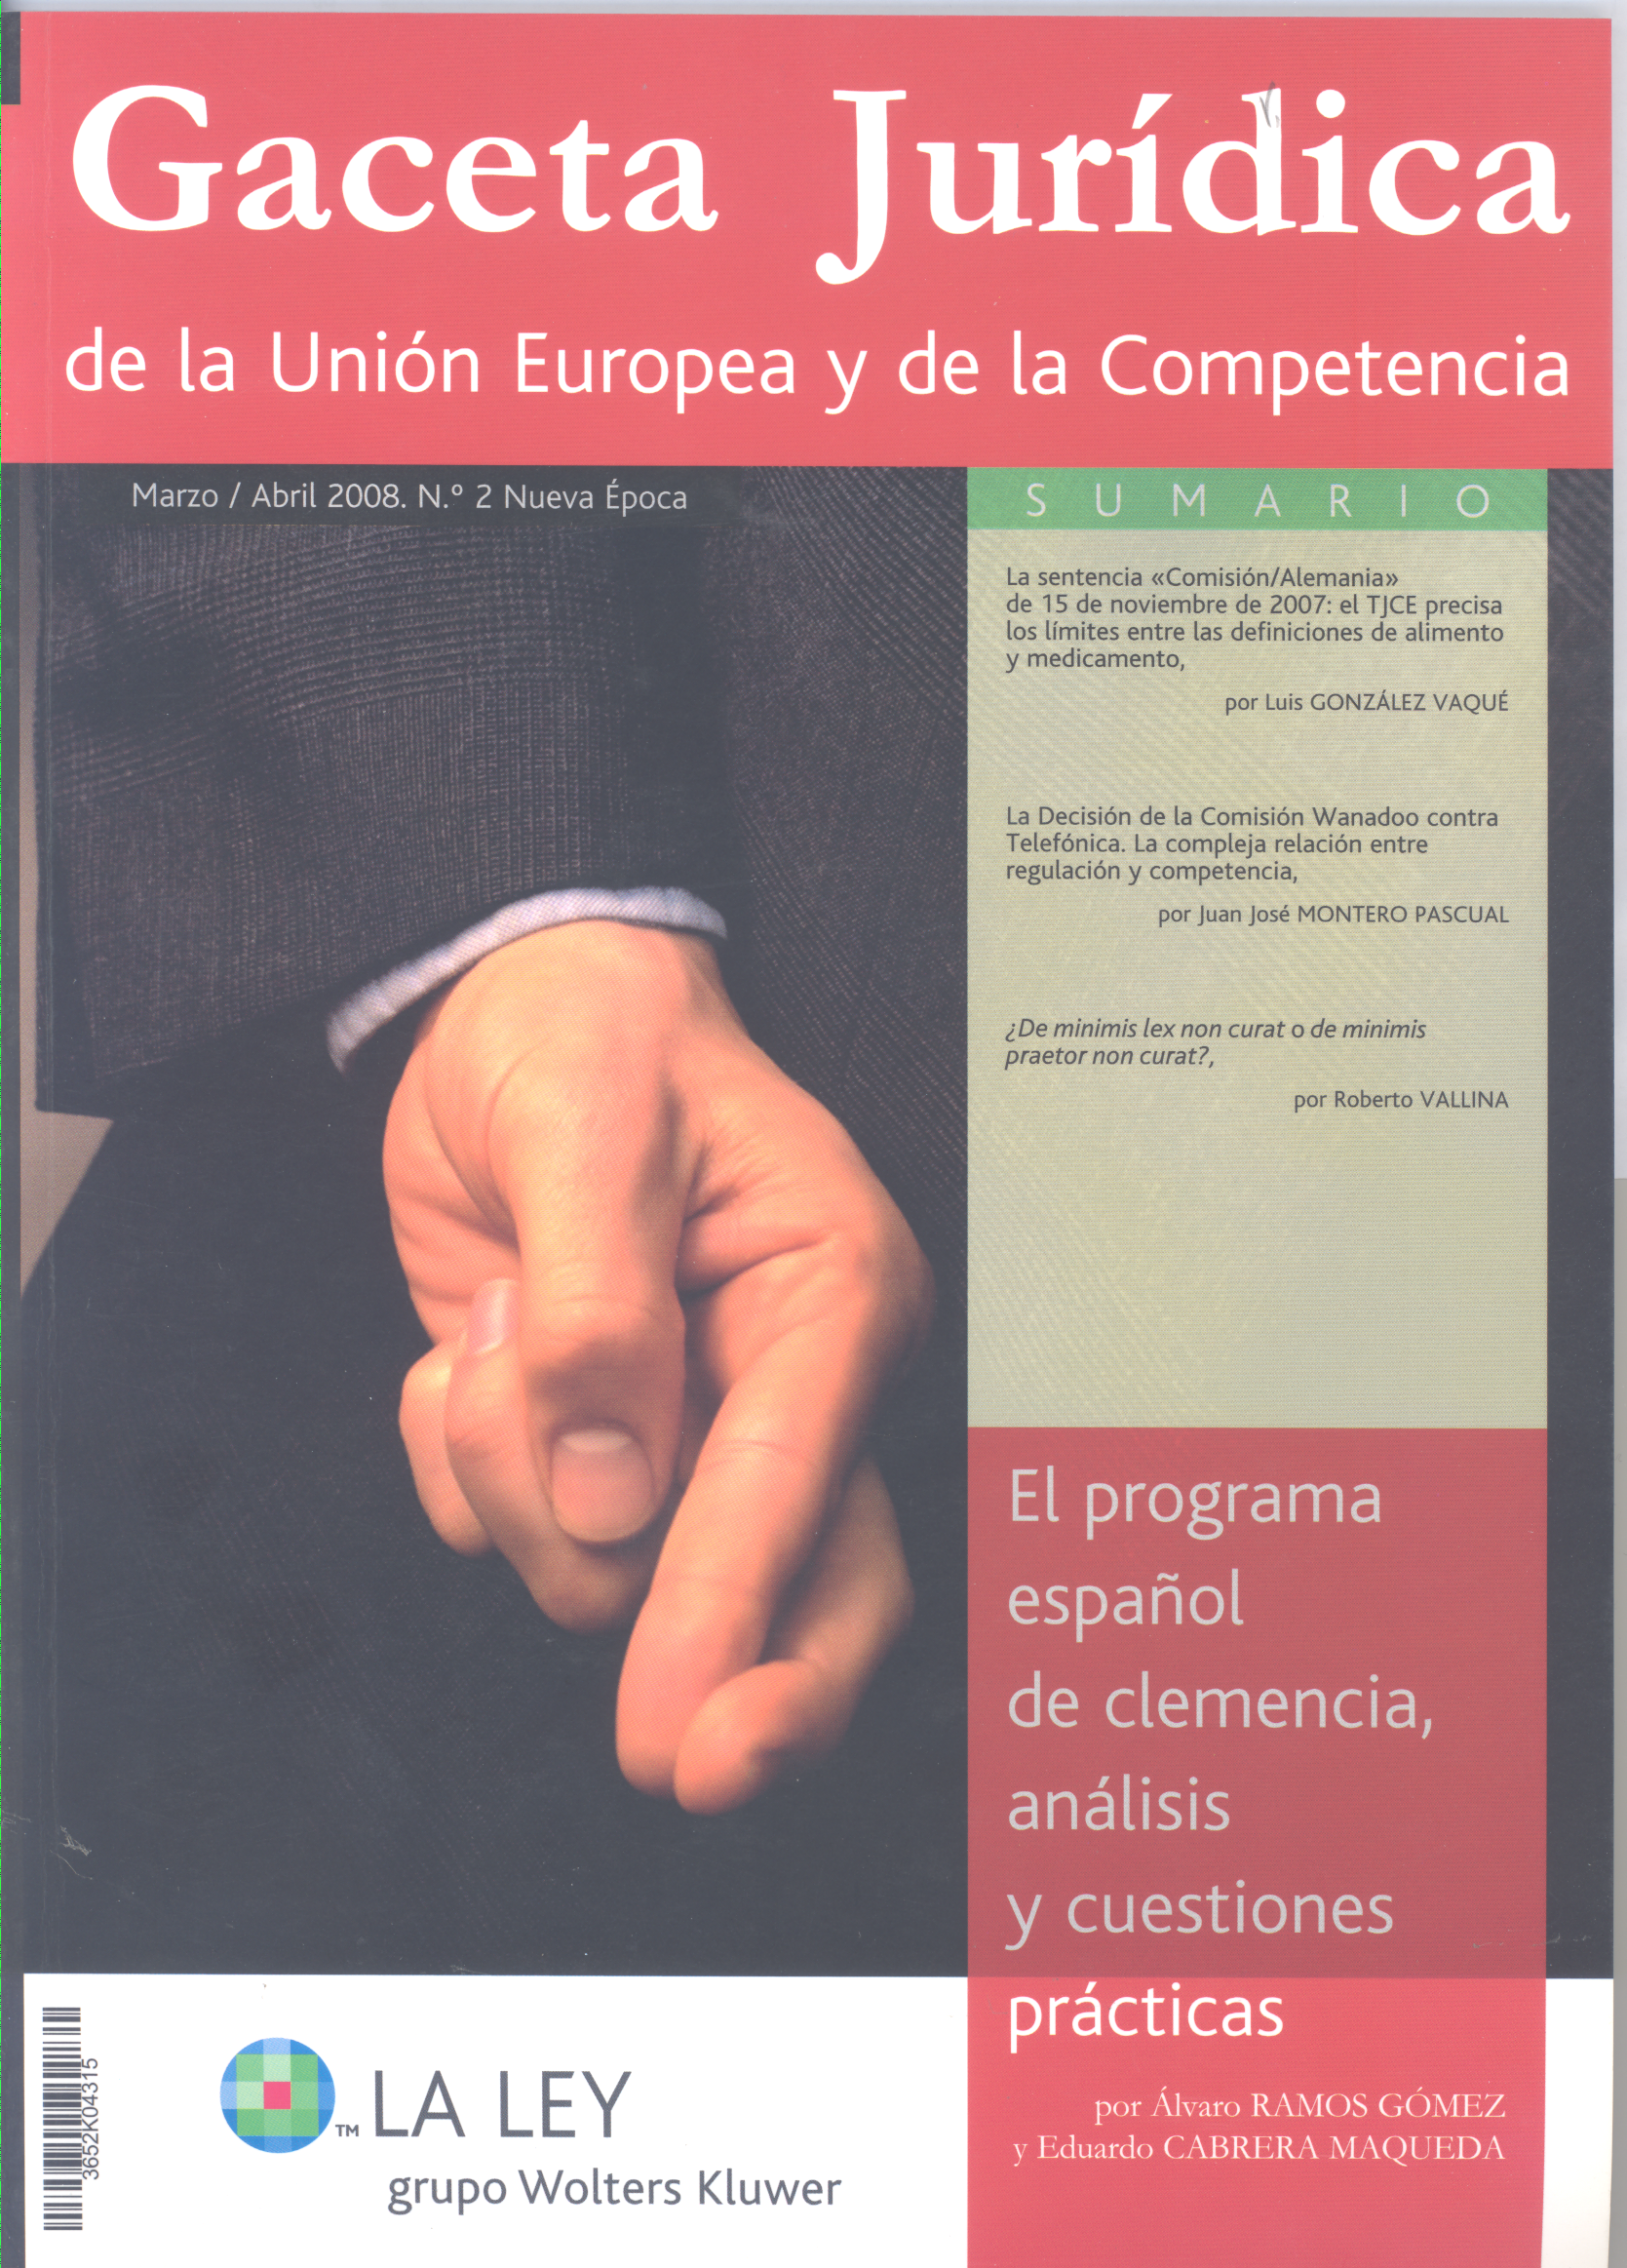 Gaceta Jurídica de la Unión Europea y de la Competencia